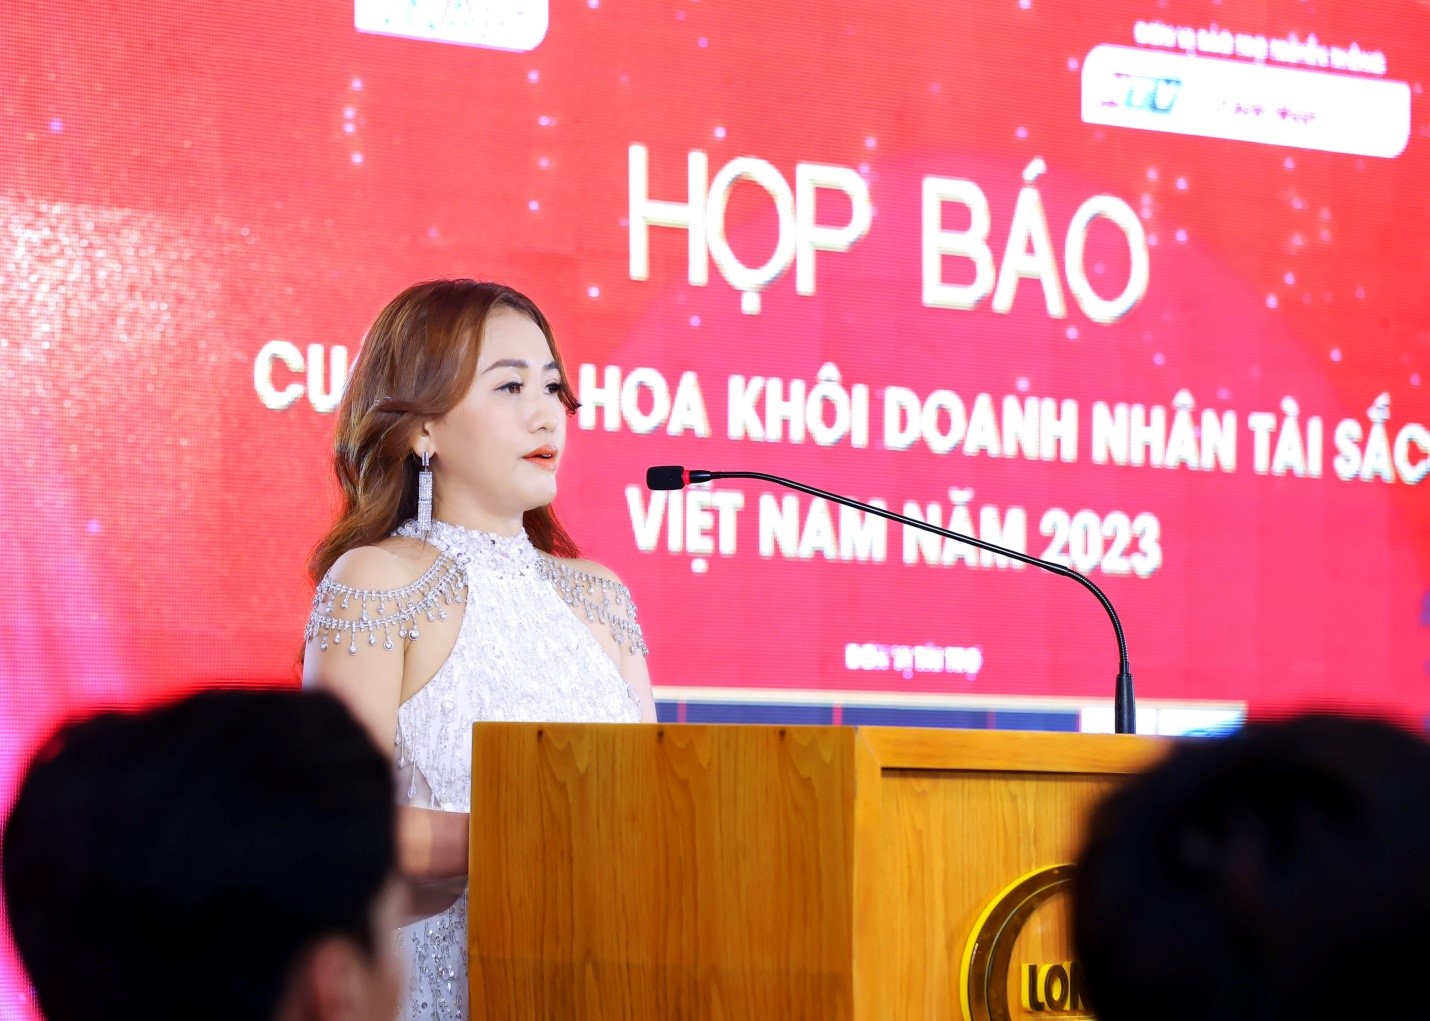 Họp báo công bố khởi động và chính thức tuyển sinh cuộc thi Hoa khôi Doanh nhân Tài sắc Việt Nam 2023 - 6